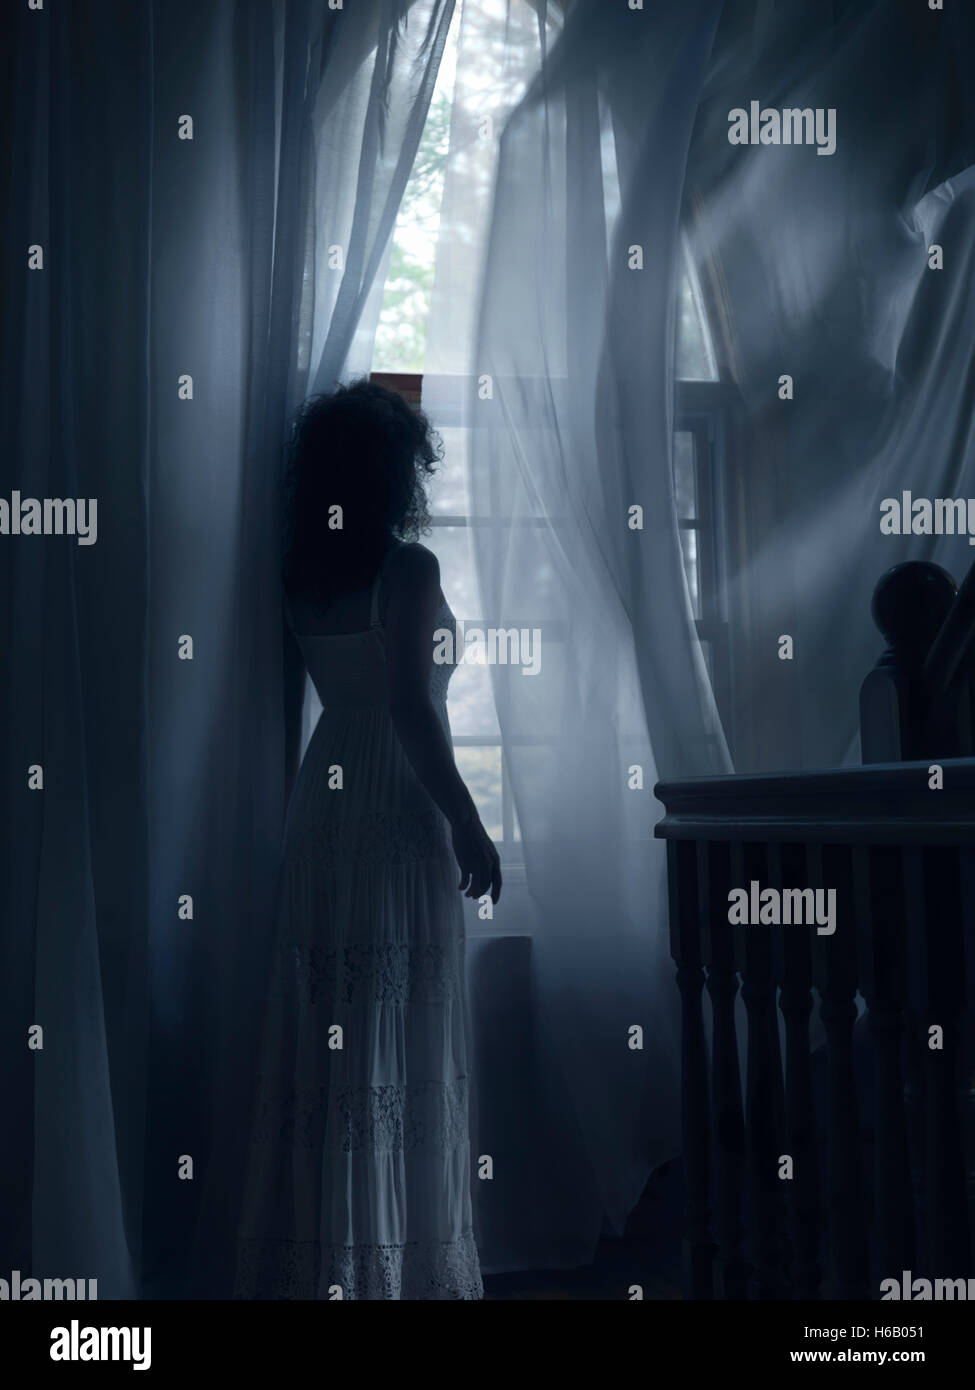 Licenza e stampe a MaximImages.com - giovane donna in un vestito bianco in piedi da una finestra con volare nelle tende del vento in una stanza buia di una casa Foto Stock